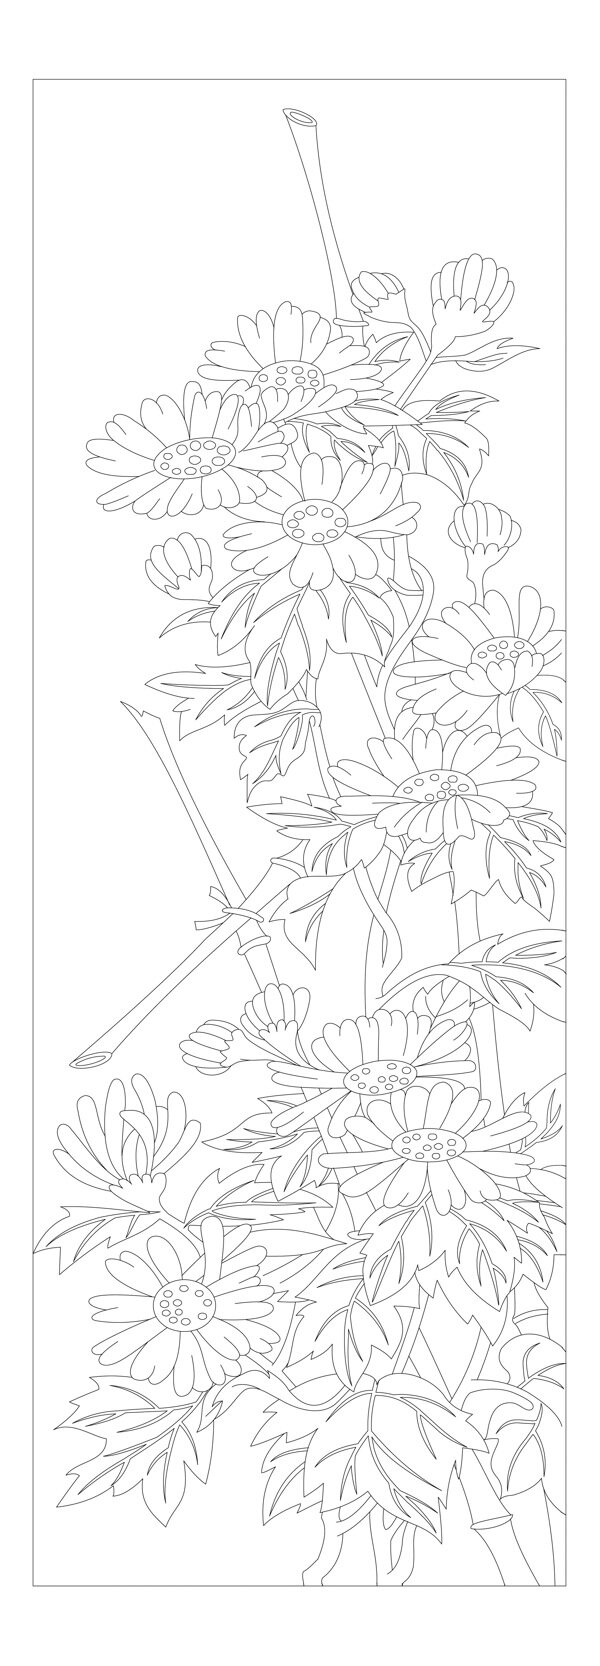 梅兰竹菊白描线条菊图片